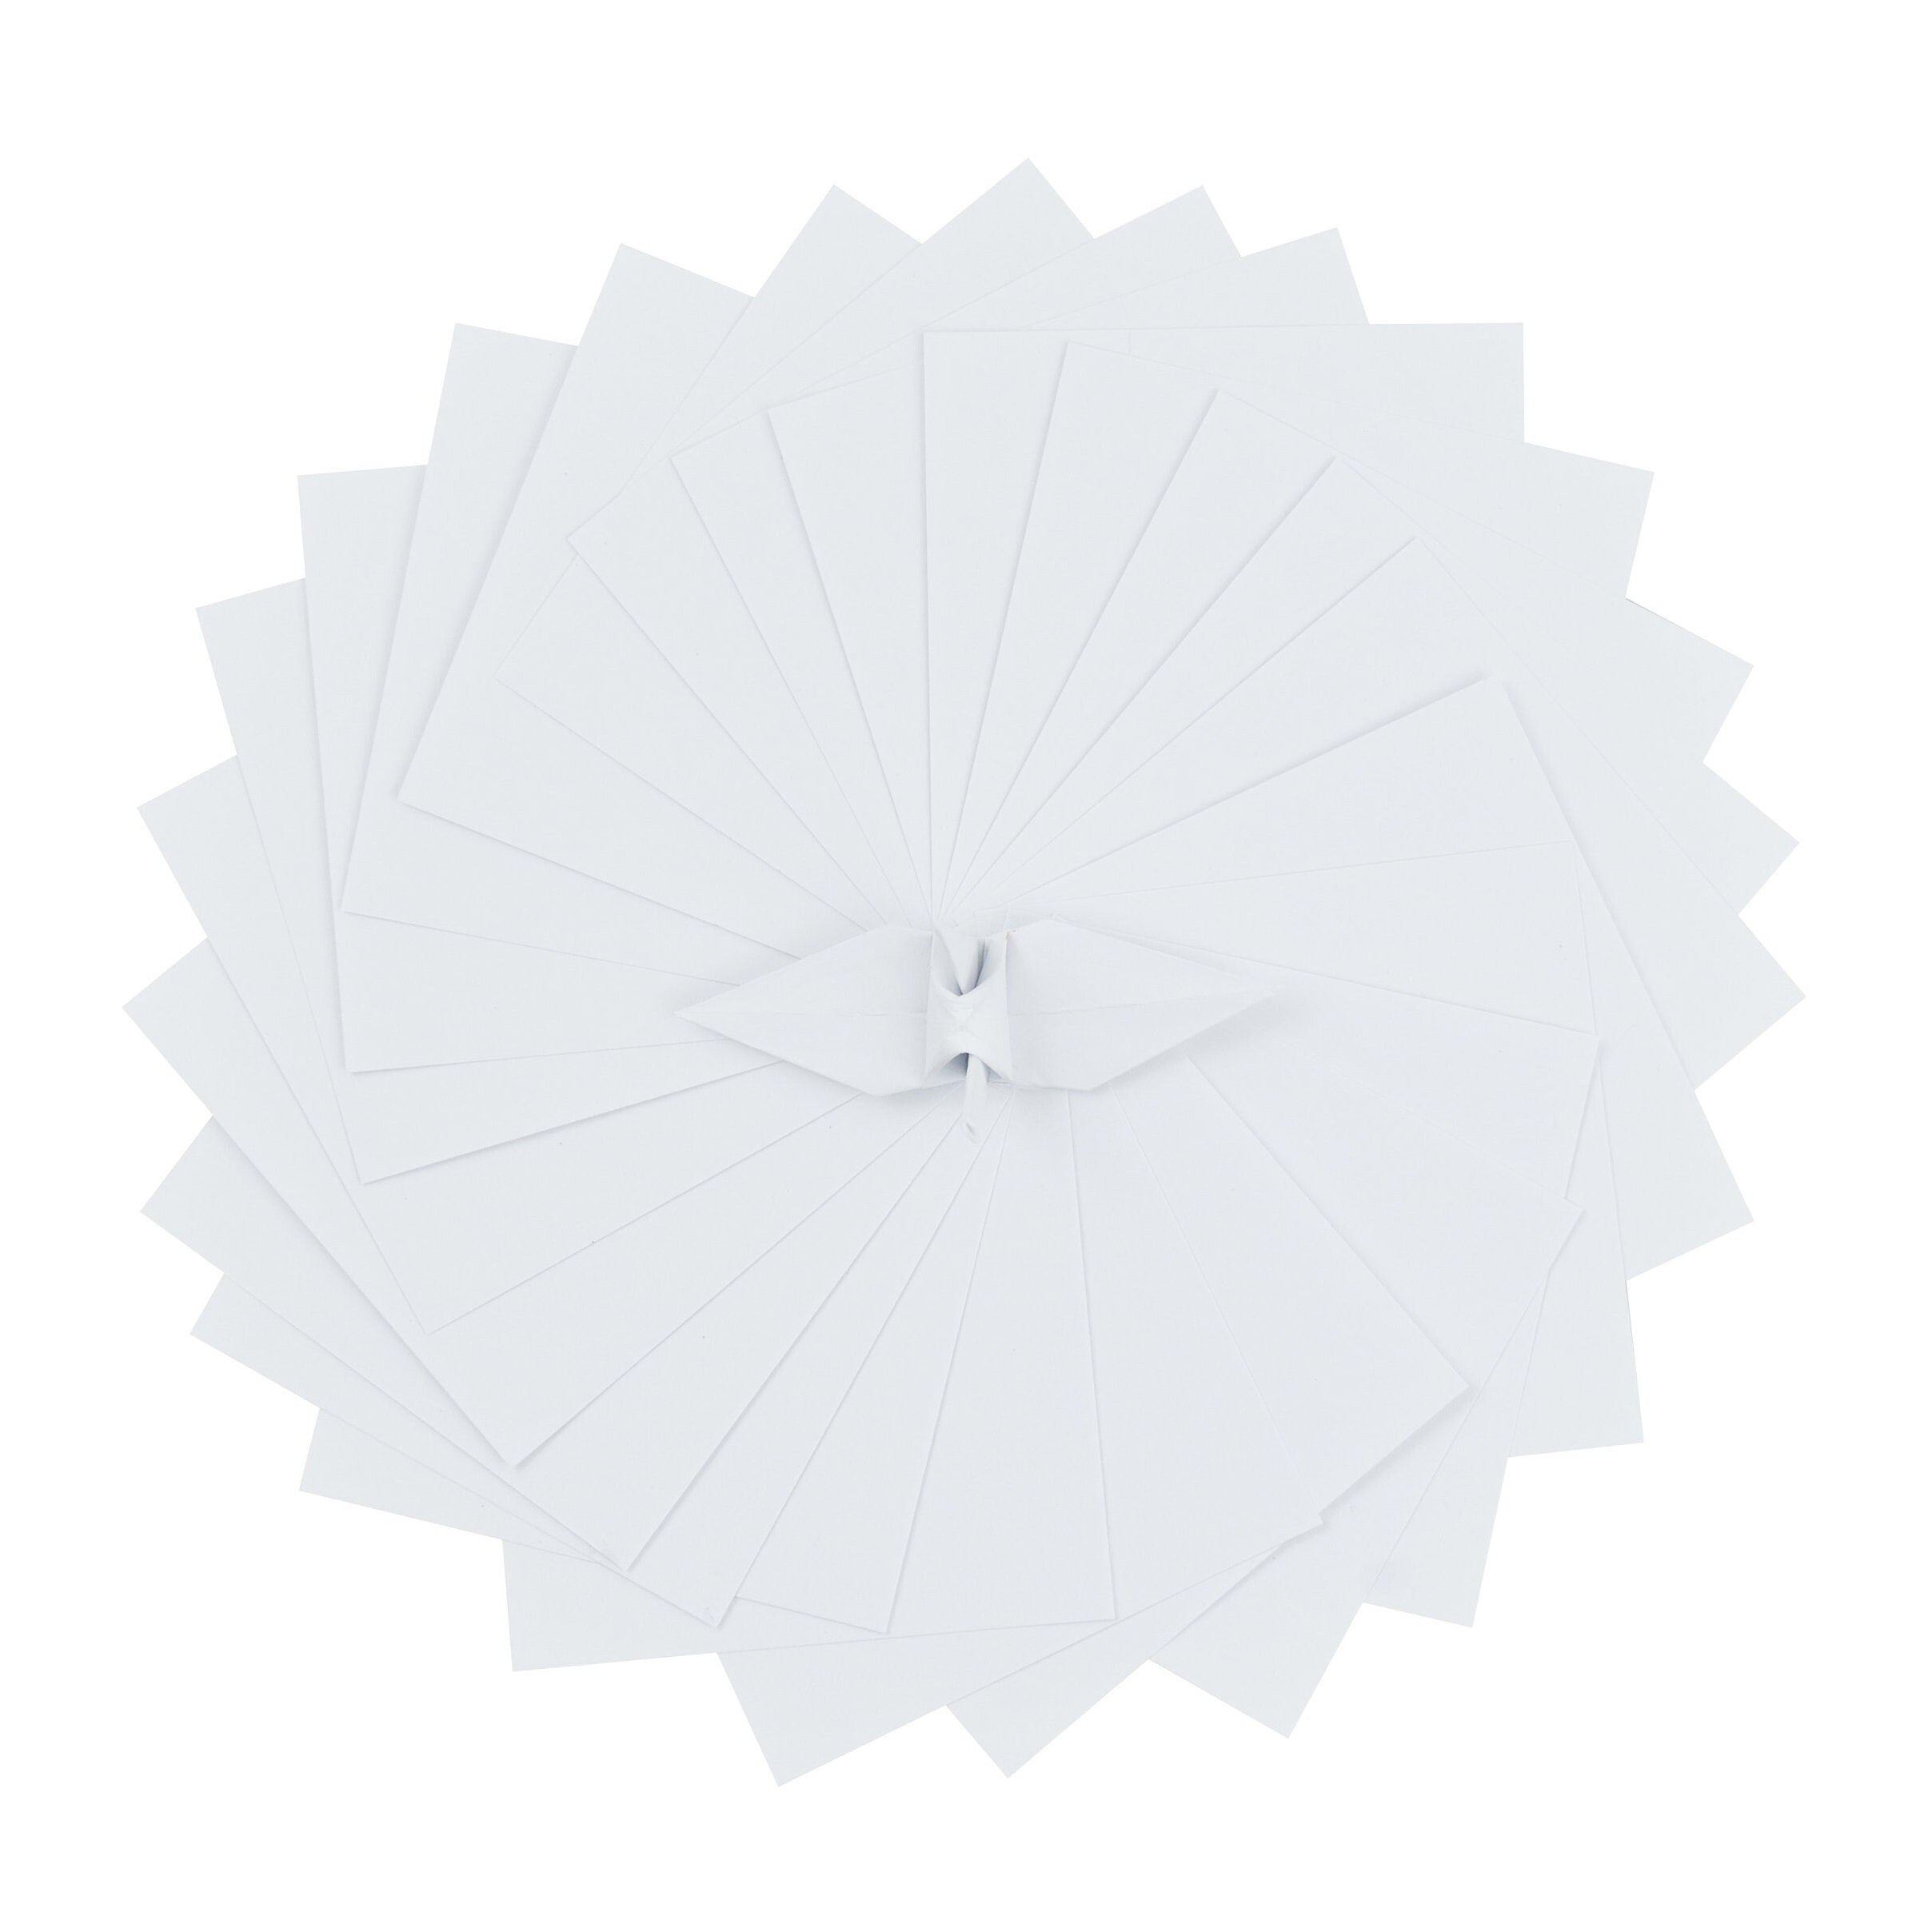 100 fogli di carta origami - 3x3 pollici - Confezione di carta quadrata per piegare, gru origami e decorazioni - S01